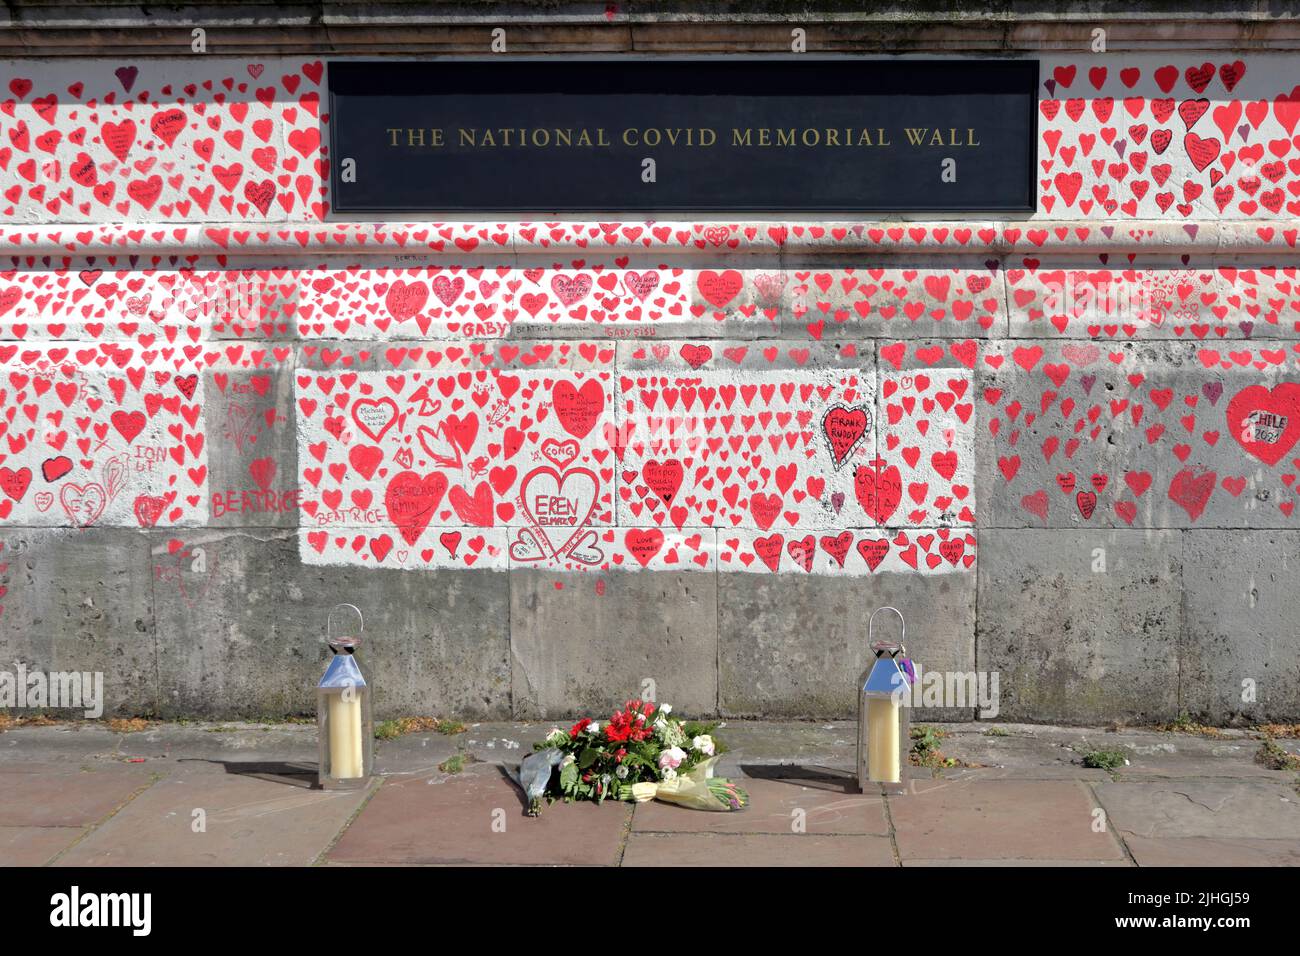 Londres, Reino Unido - 30 de marzo de 2021: El Muro Conmemorativo Nacional de Covid, voluntarios pintando 150.000 corazones rojos para conmemorar las muertes de Covid-19 Foto de stock